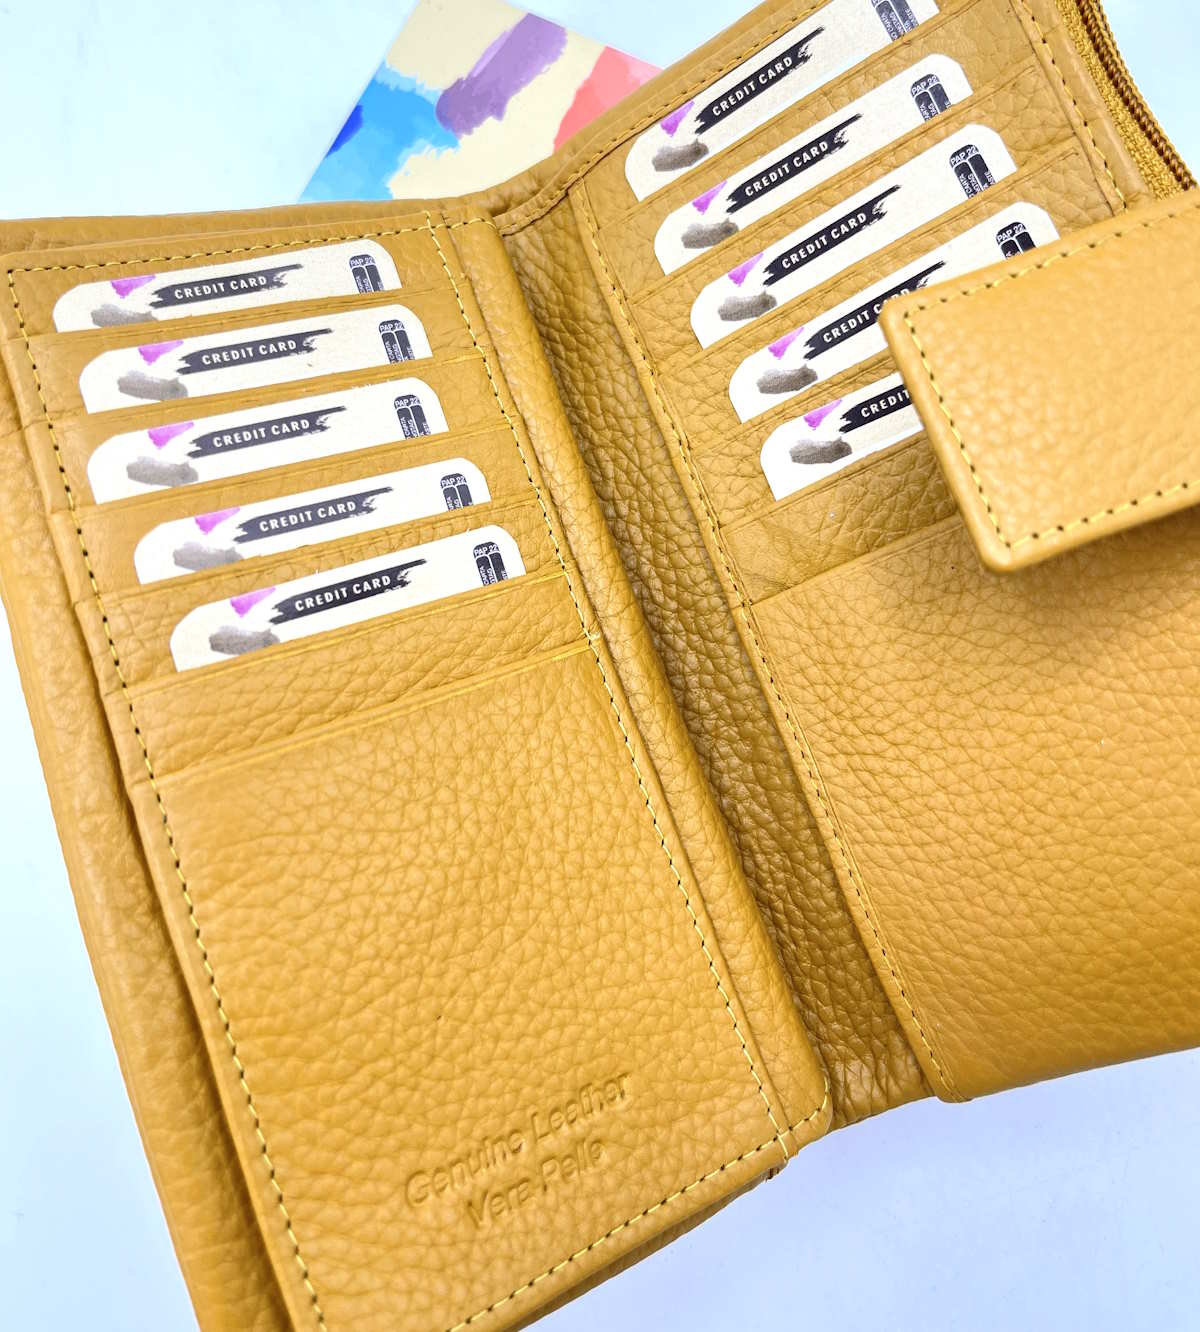 Genuine leather wallet, for women, art. PFD25.392